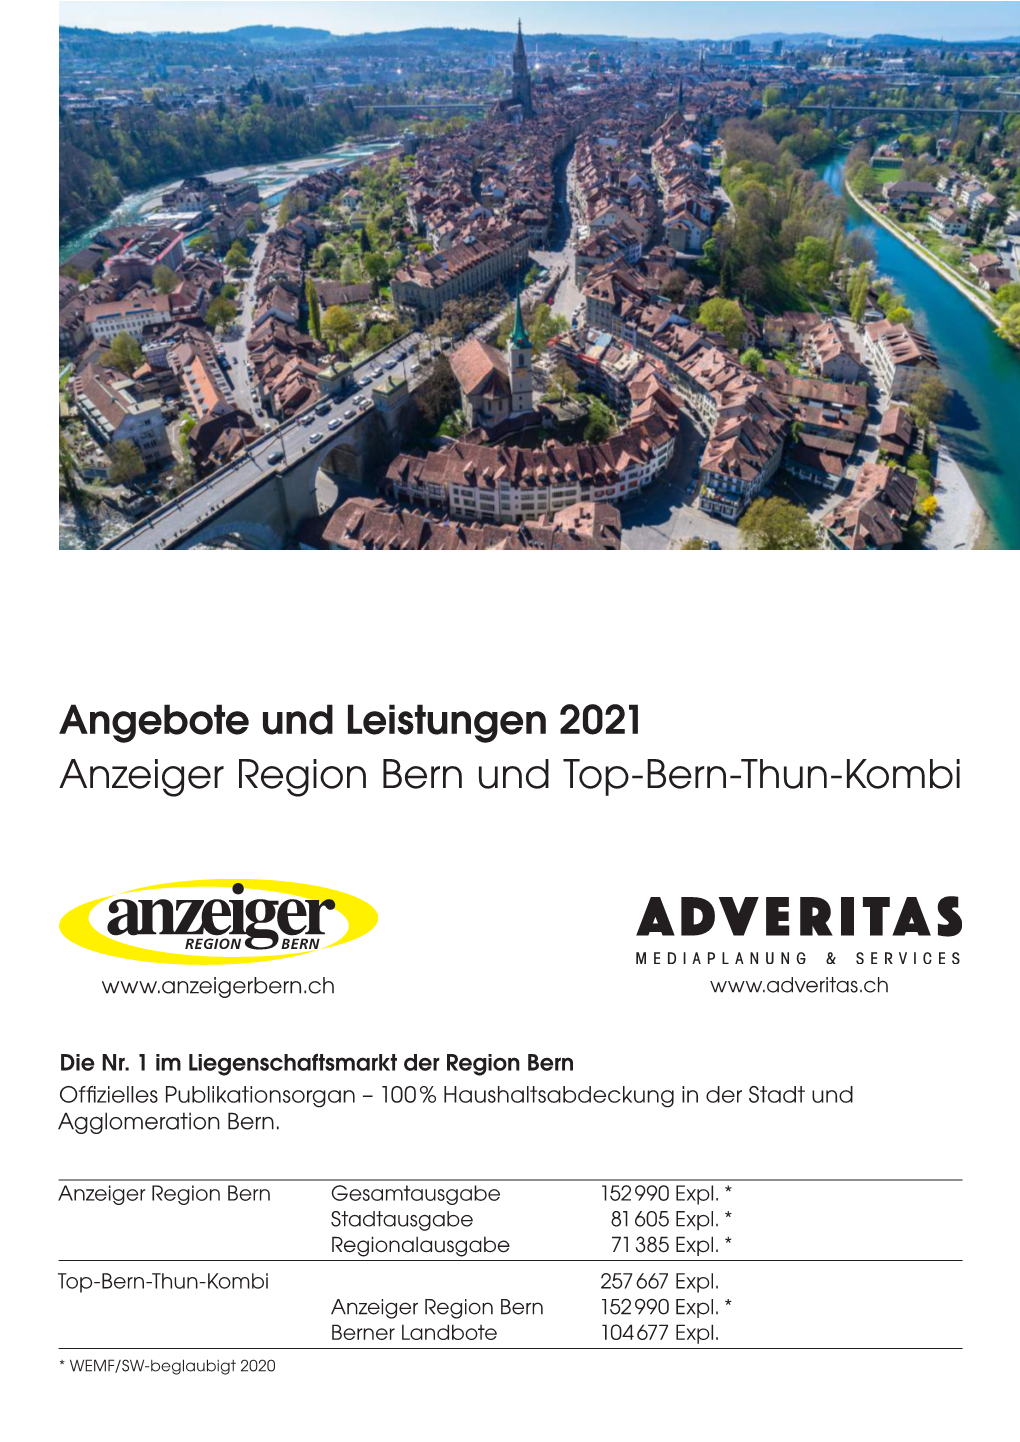 Angebote Und Leistungen 2021 Anzeiger Region Bern Und Top-Bern-Thun-Kombi